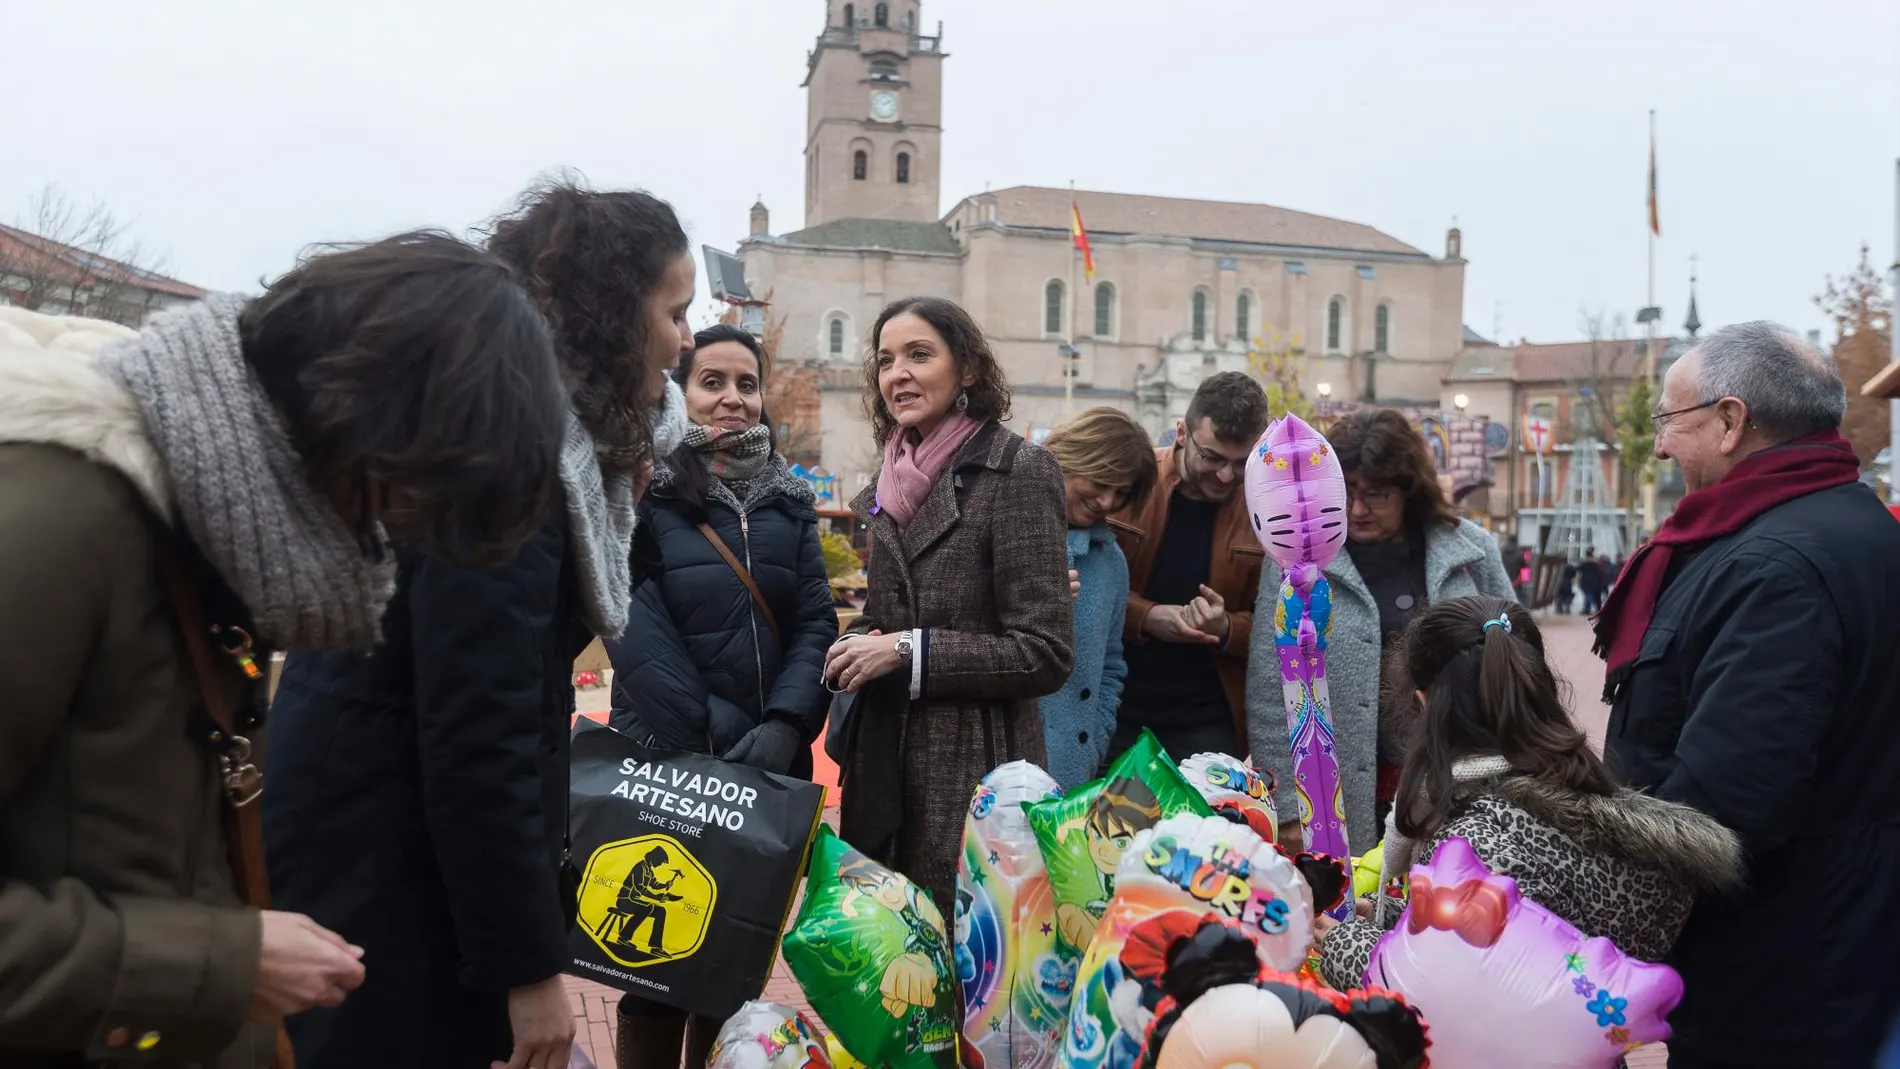 La ministra de Industria, Comercio y Turismo, Reyes Maroto, visita Medina del Campo (Valladolid) y recorre el mercado navideño y la zona de juegos infantiles de la localidad